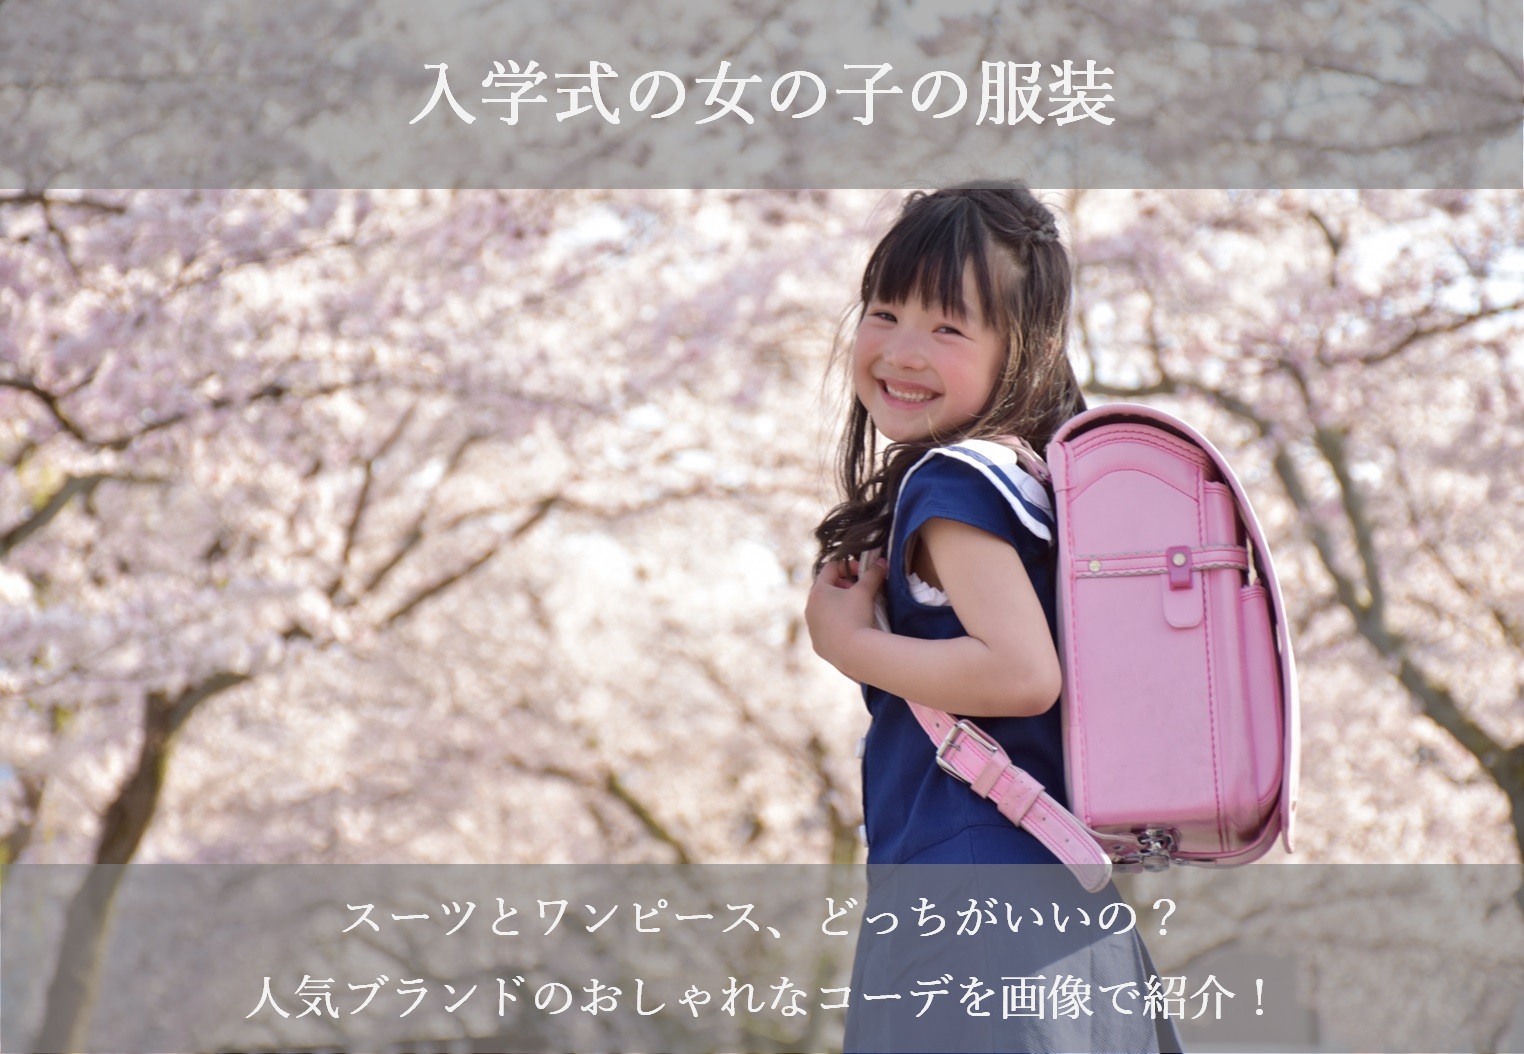 入学式の女の子の服装19 スーツとワンピースのコーデを画像で紹介 シアワセノキセキ